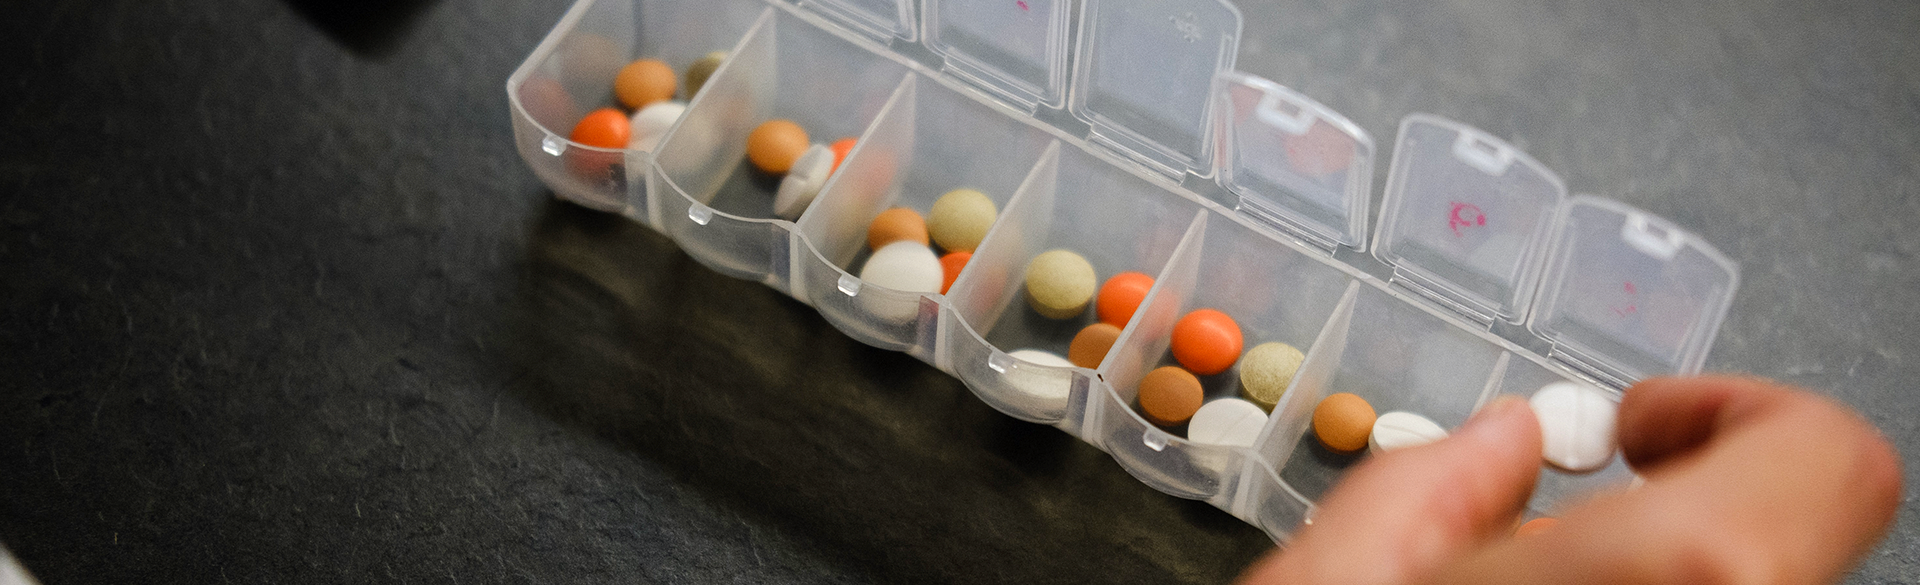 Opioid Prescribing Rates Higher in U.S.